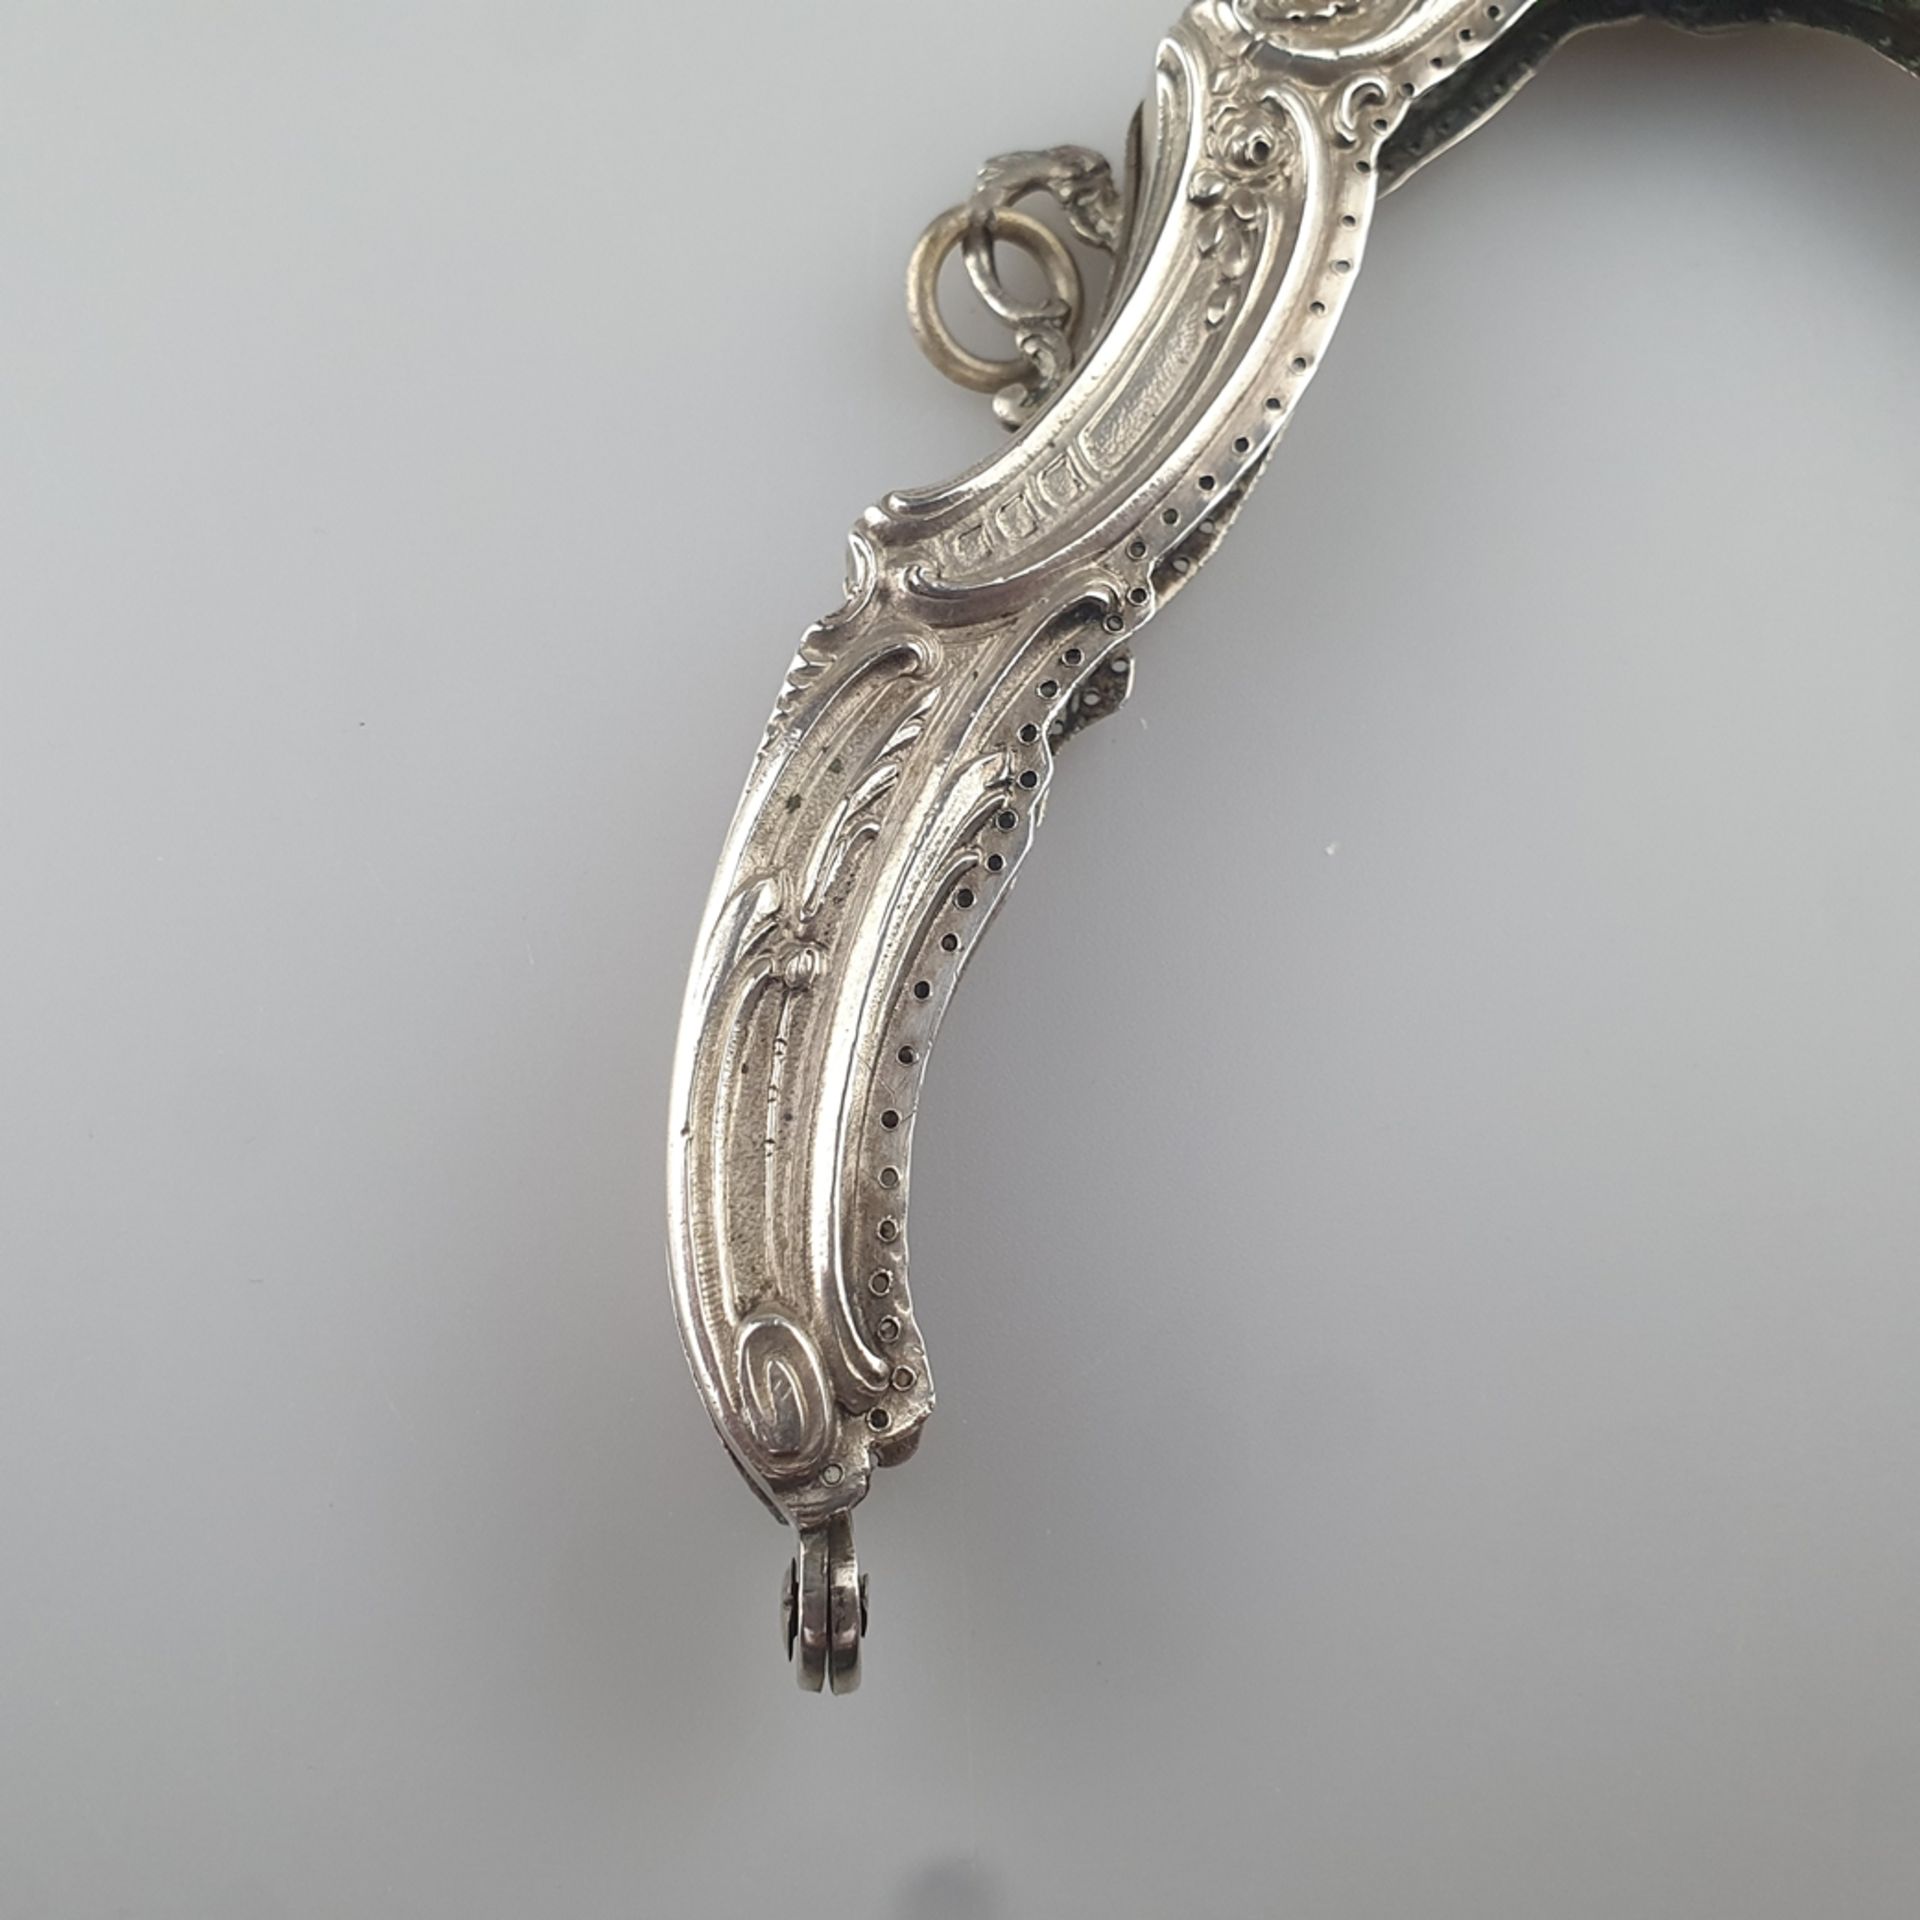 Taschenbügel für eine Abendhandtasche - Silber 800/000, gestempelt „Halbmond Krone 800 S“, geschwei - Bild 2 aus 8